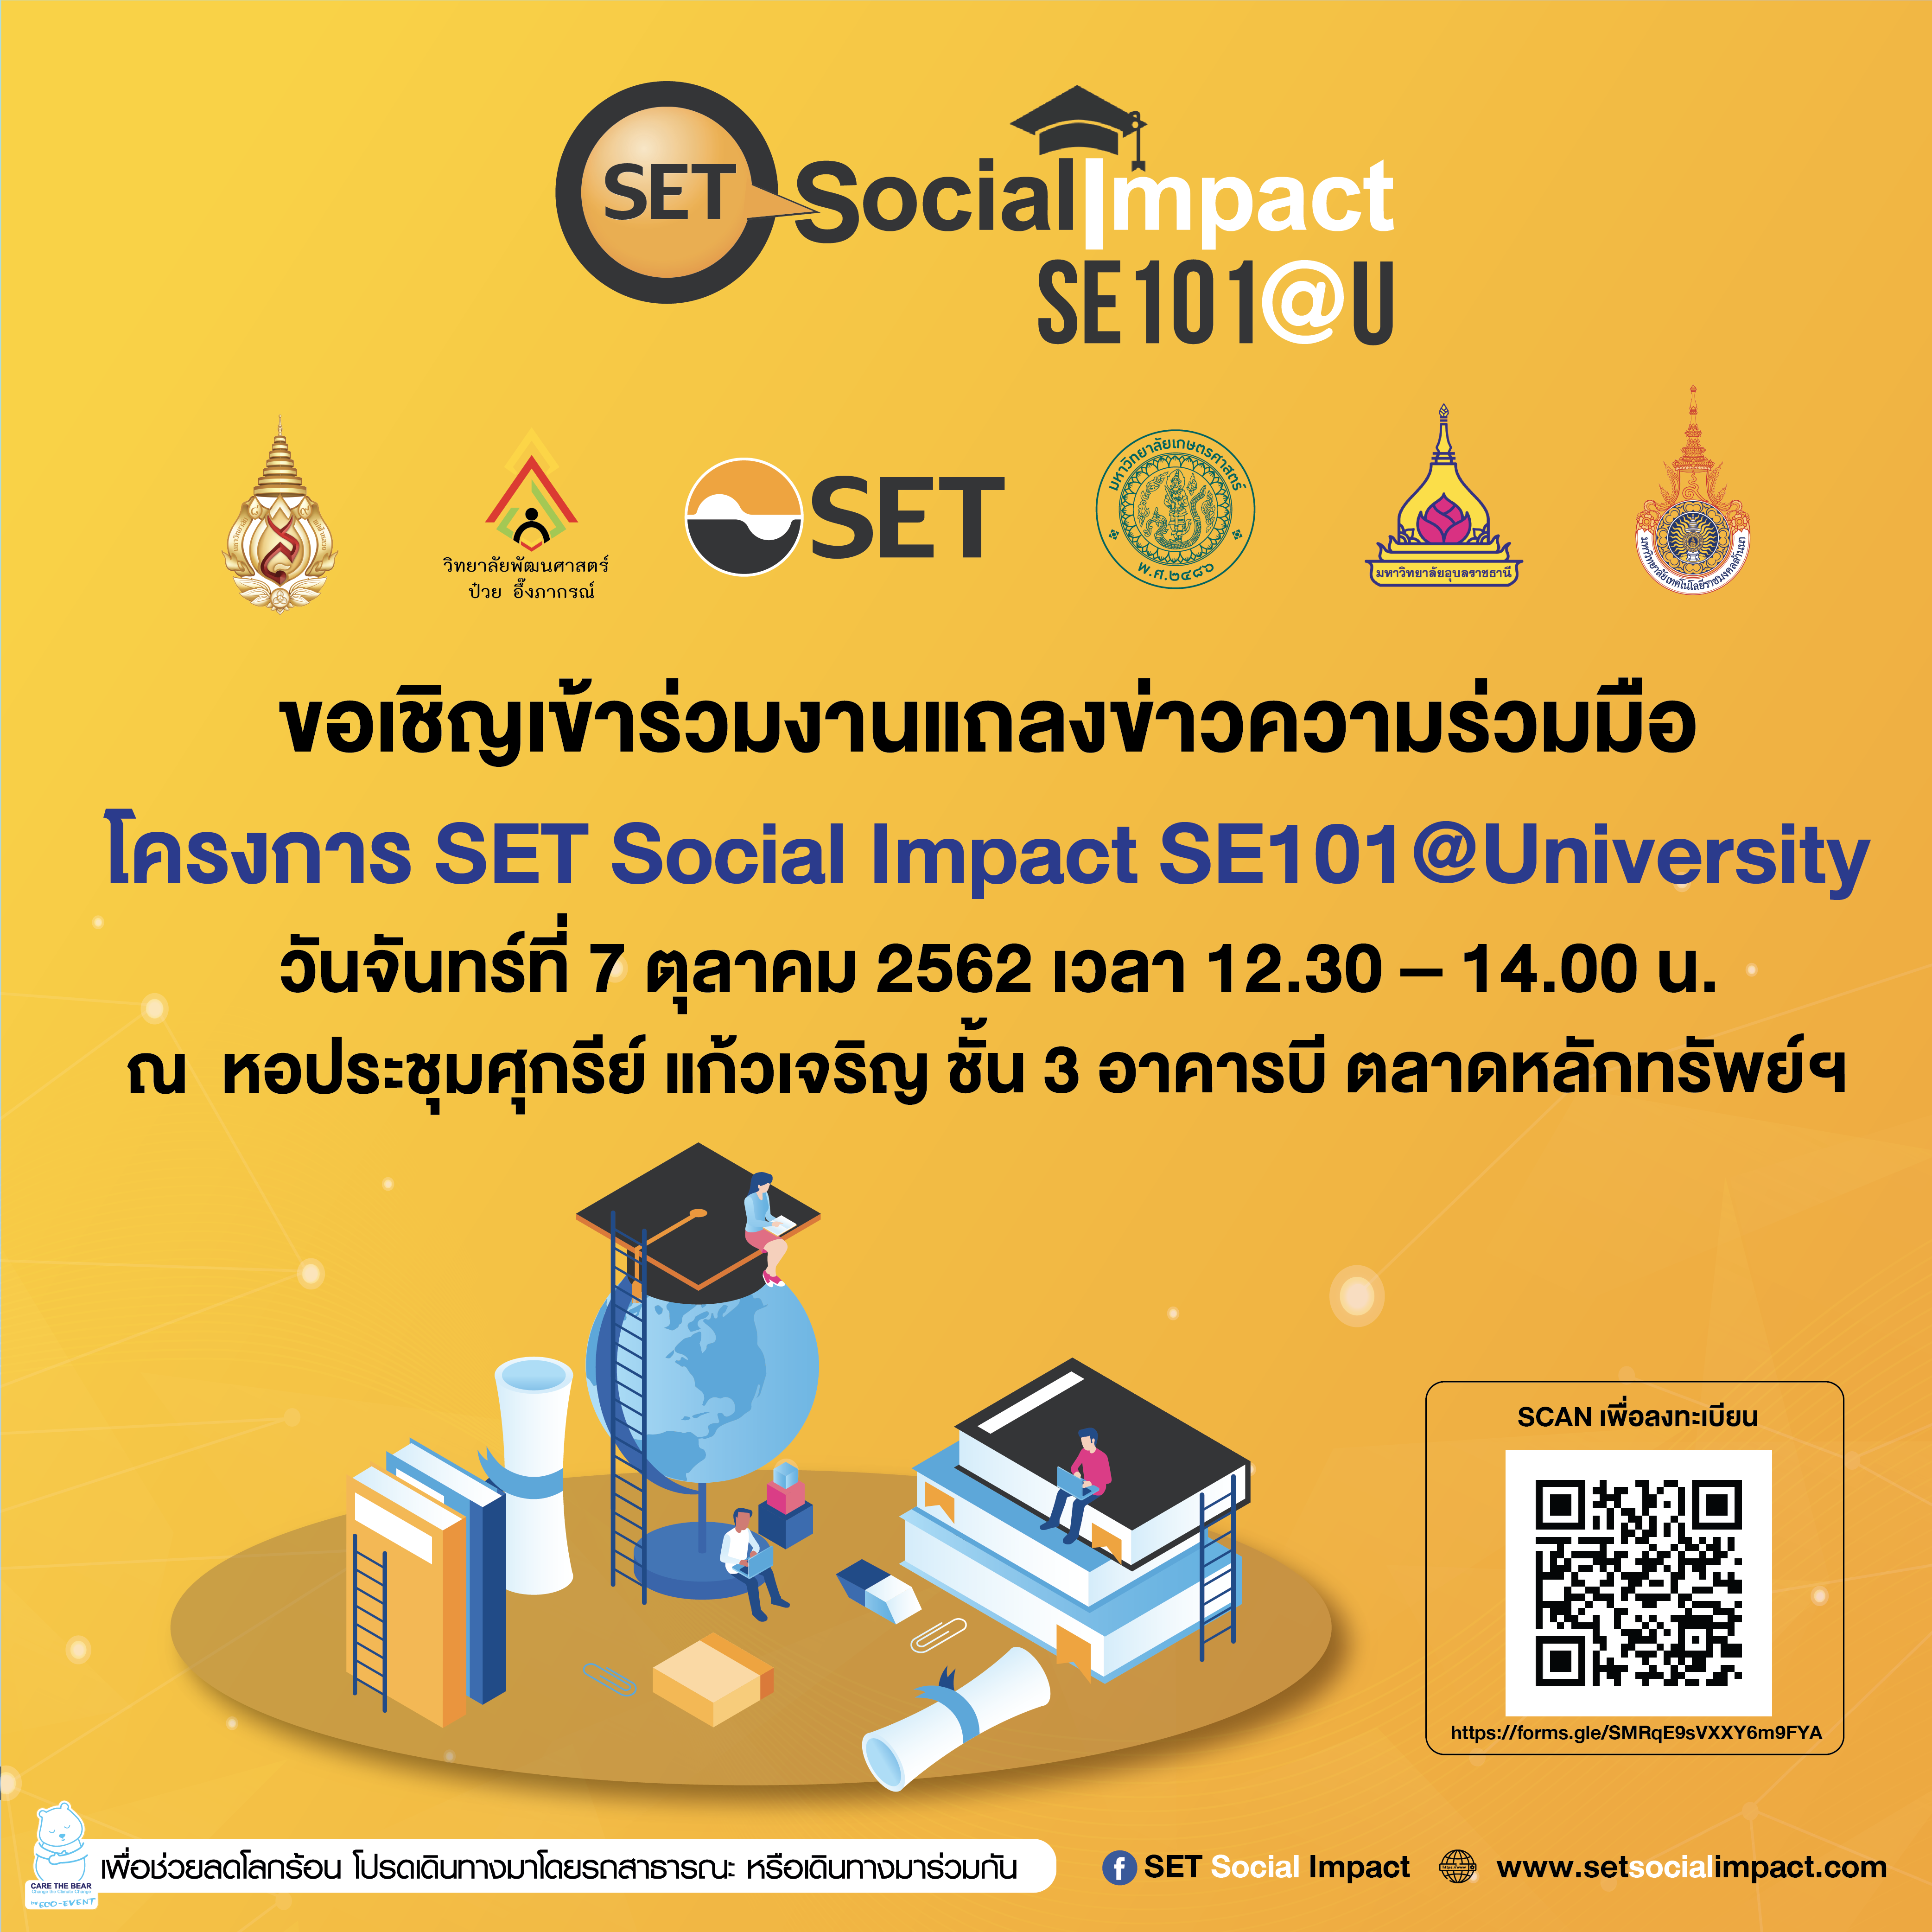 งานแถลงข่าวความร่วมมือ โครงการ SET Social Impact SE101@Universit